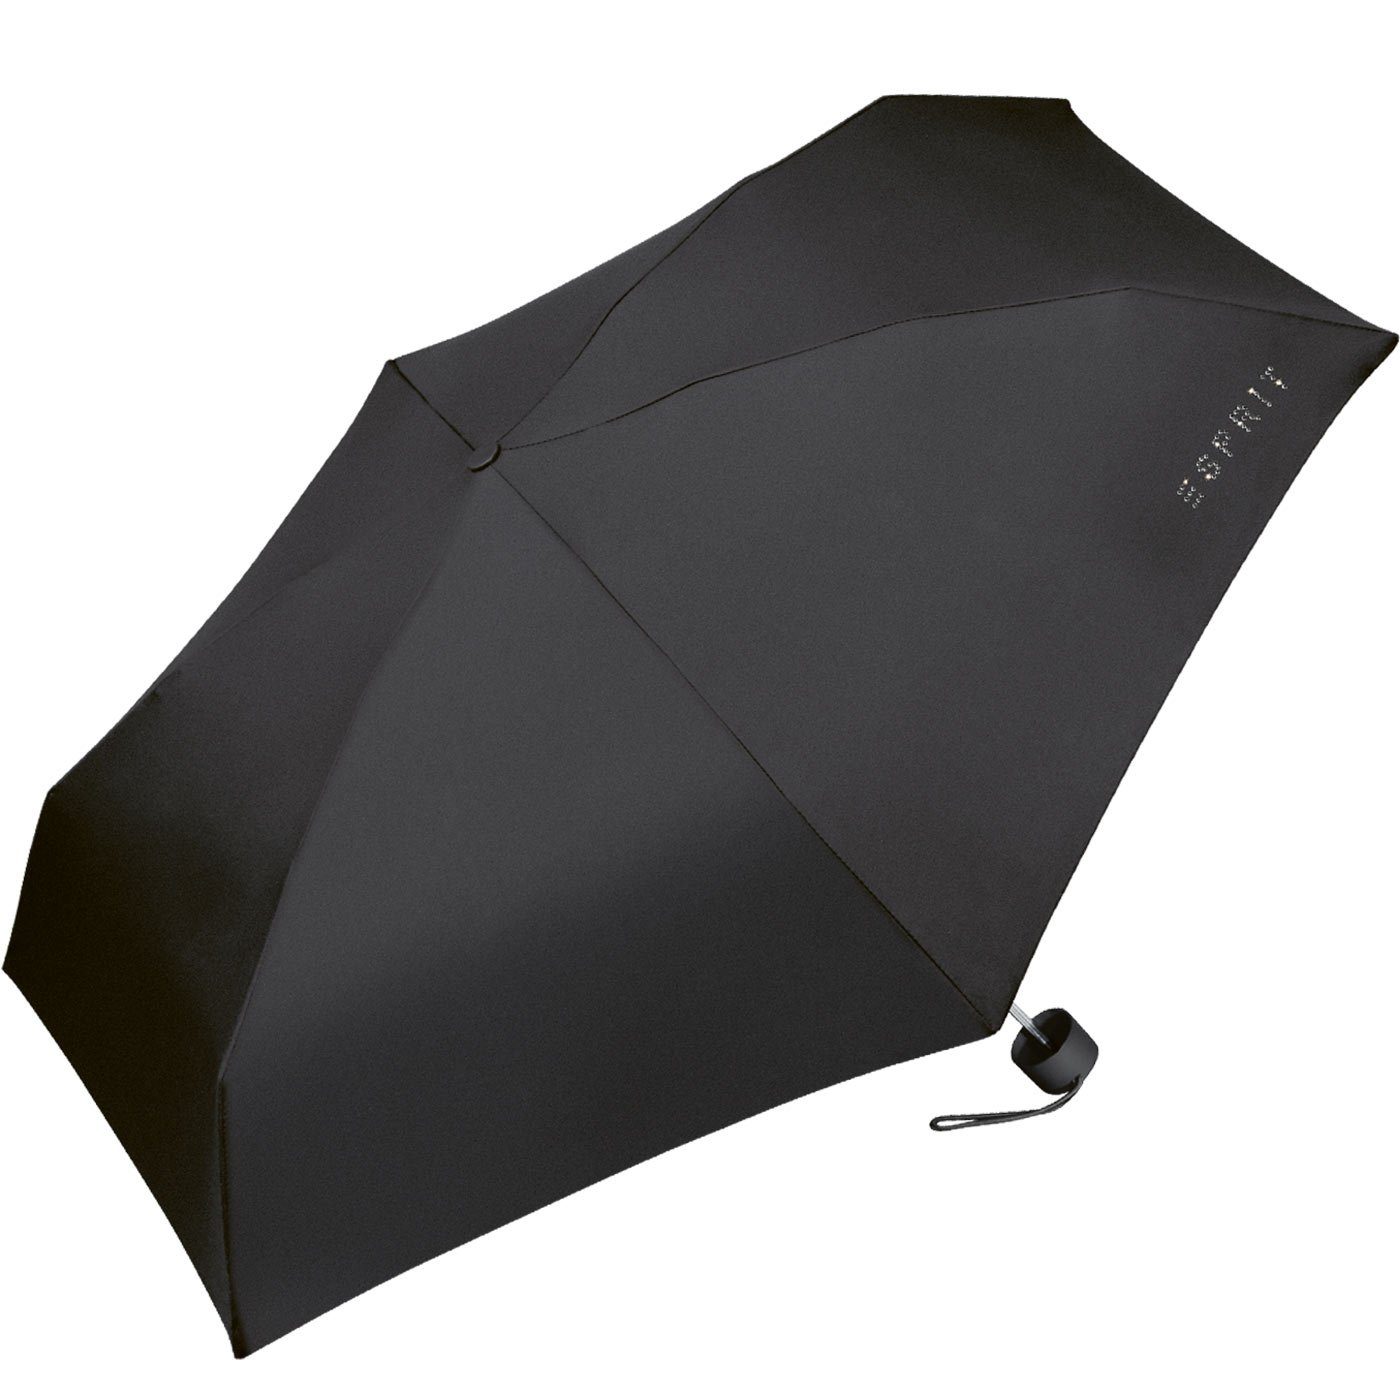 Esprit Langregenschirm Super Mini klein winzig sehr leicht, und Schirm Petito